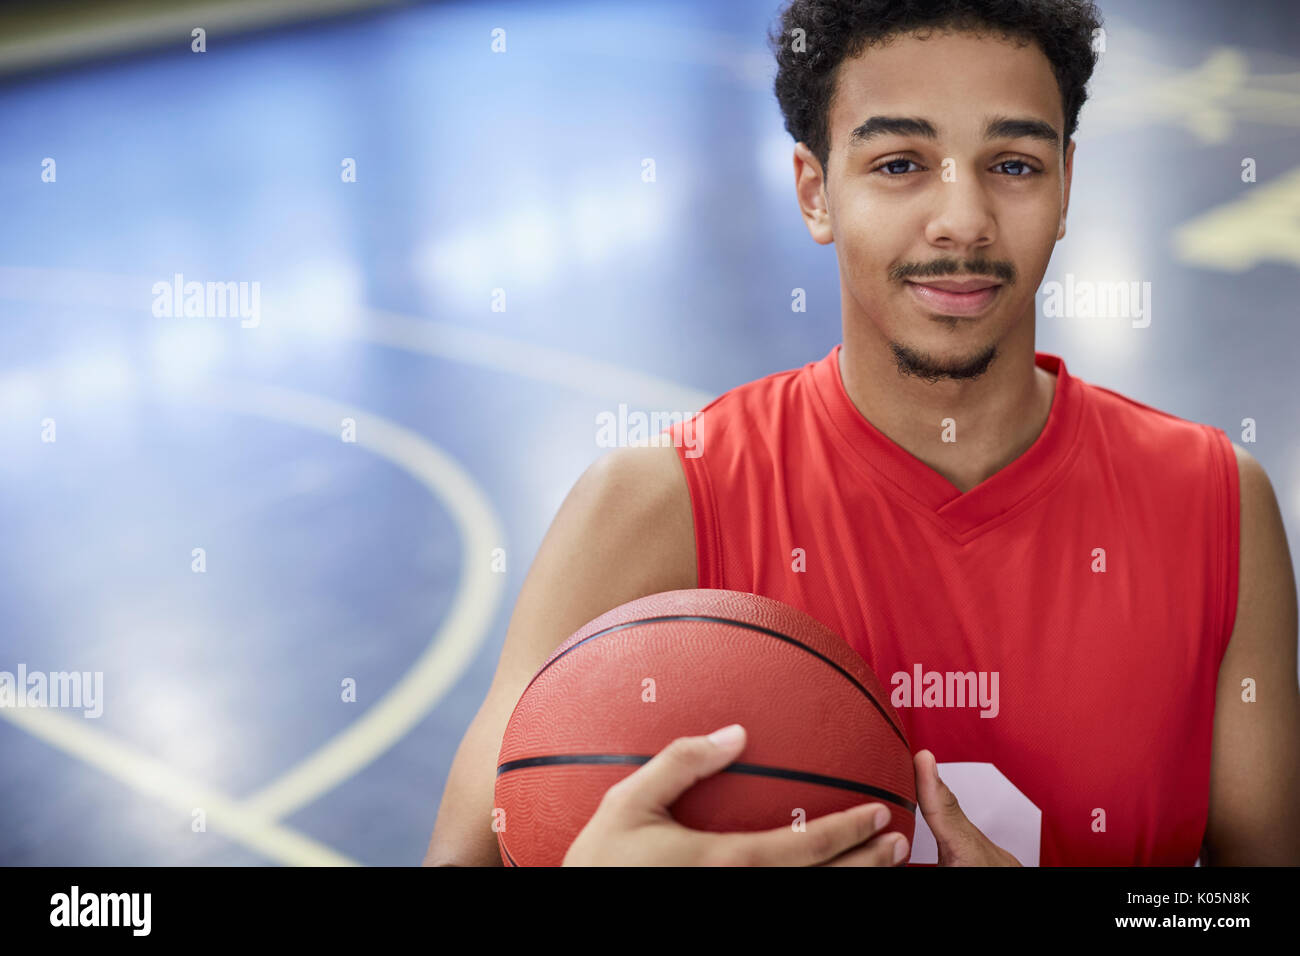 Ritratto fiducioso maschile giovane giocatore di basket tenendo la pallacanestro su corte Foto Stock